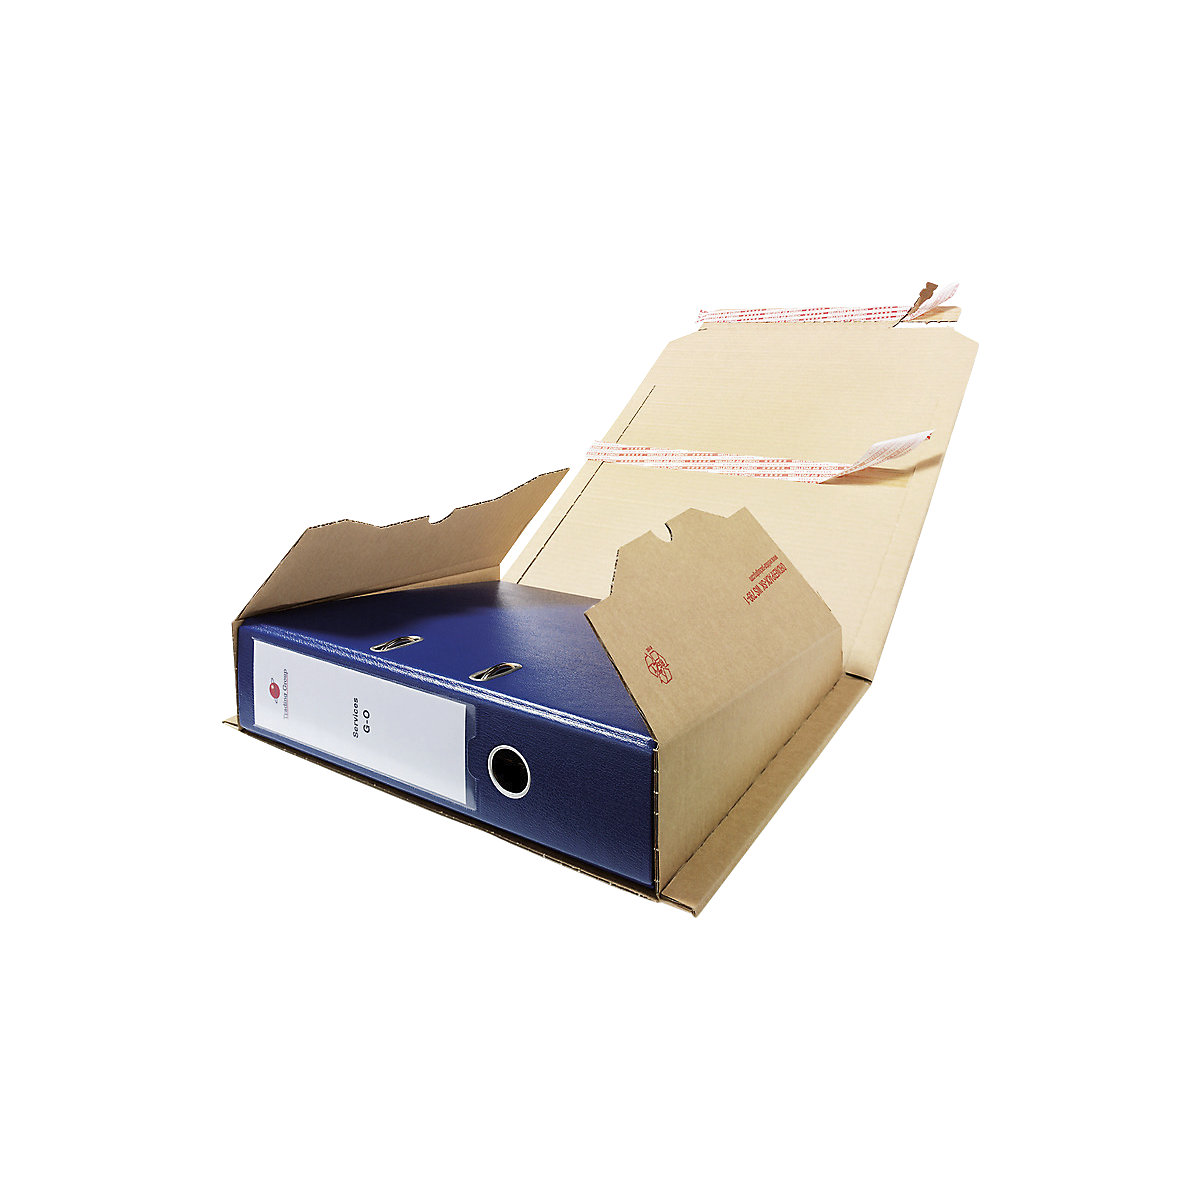 Imballaggio per raccoglitori, scatole di cartone per raccoglitori – flow